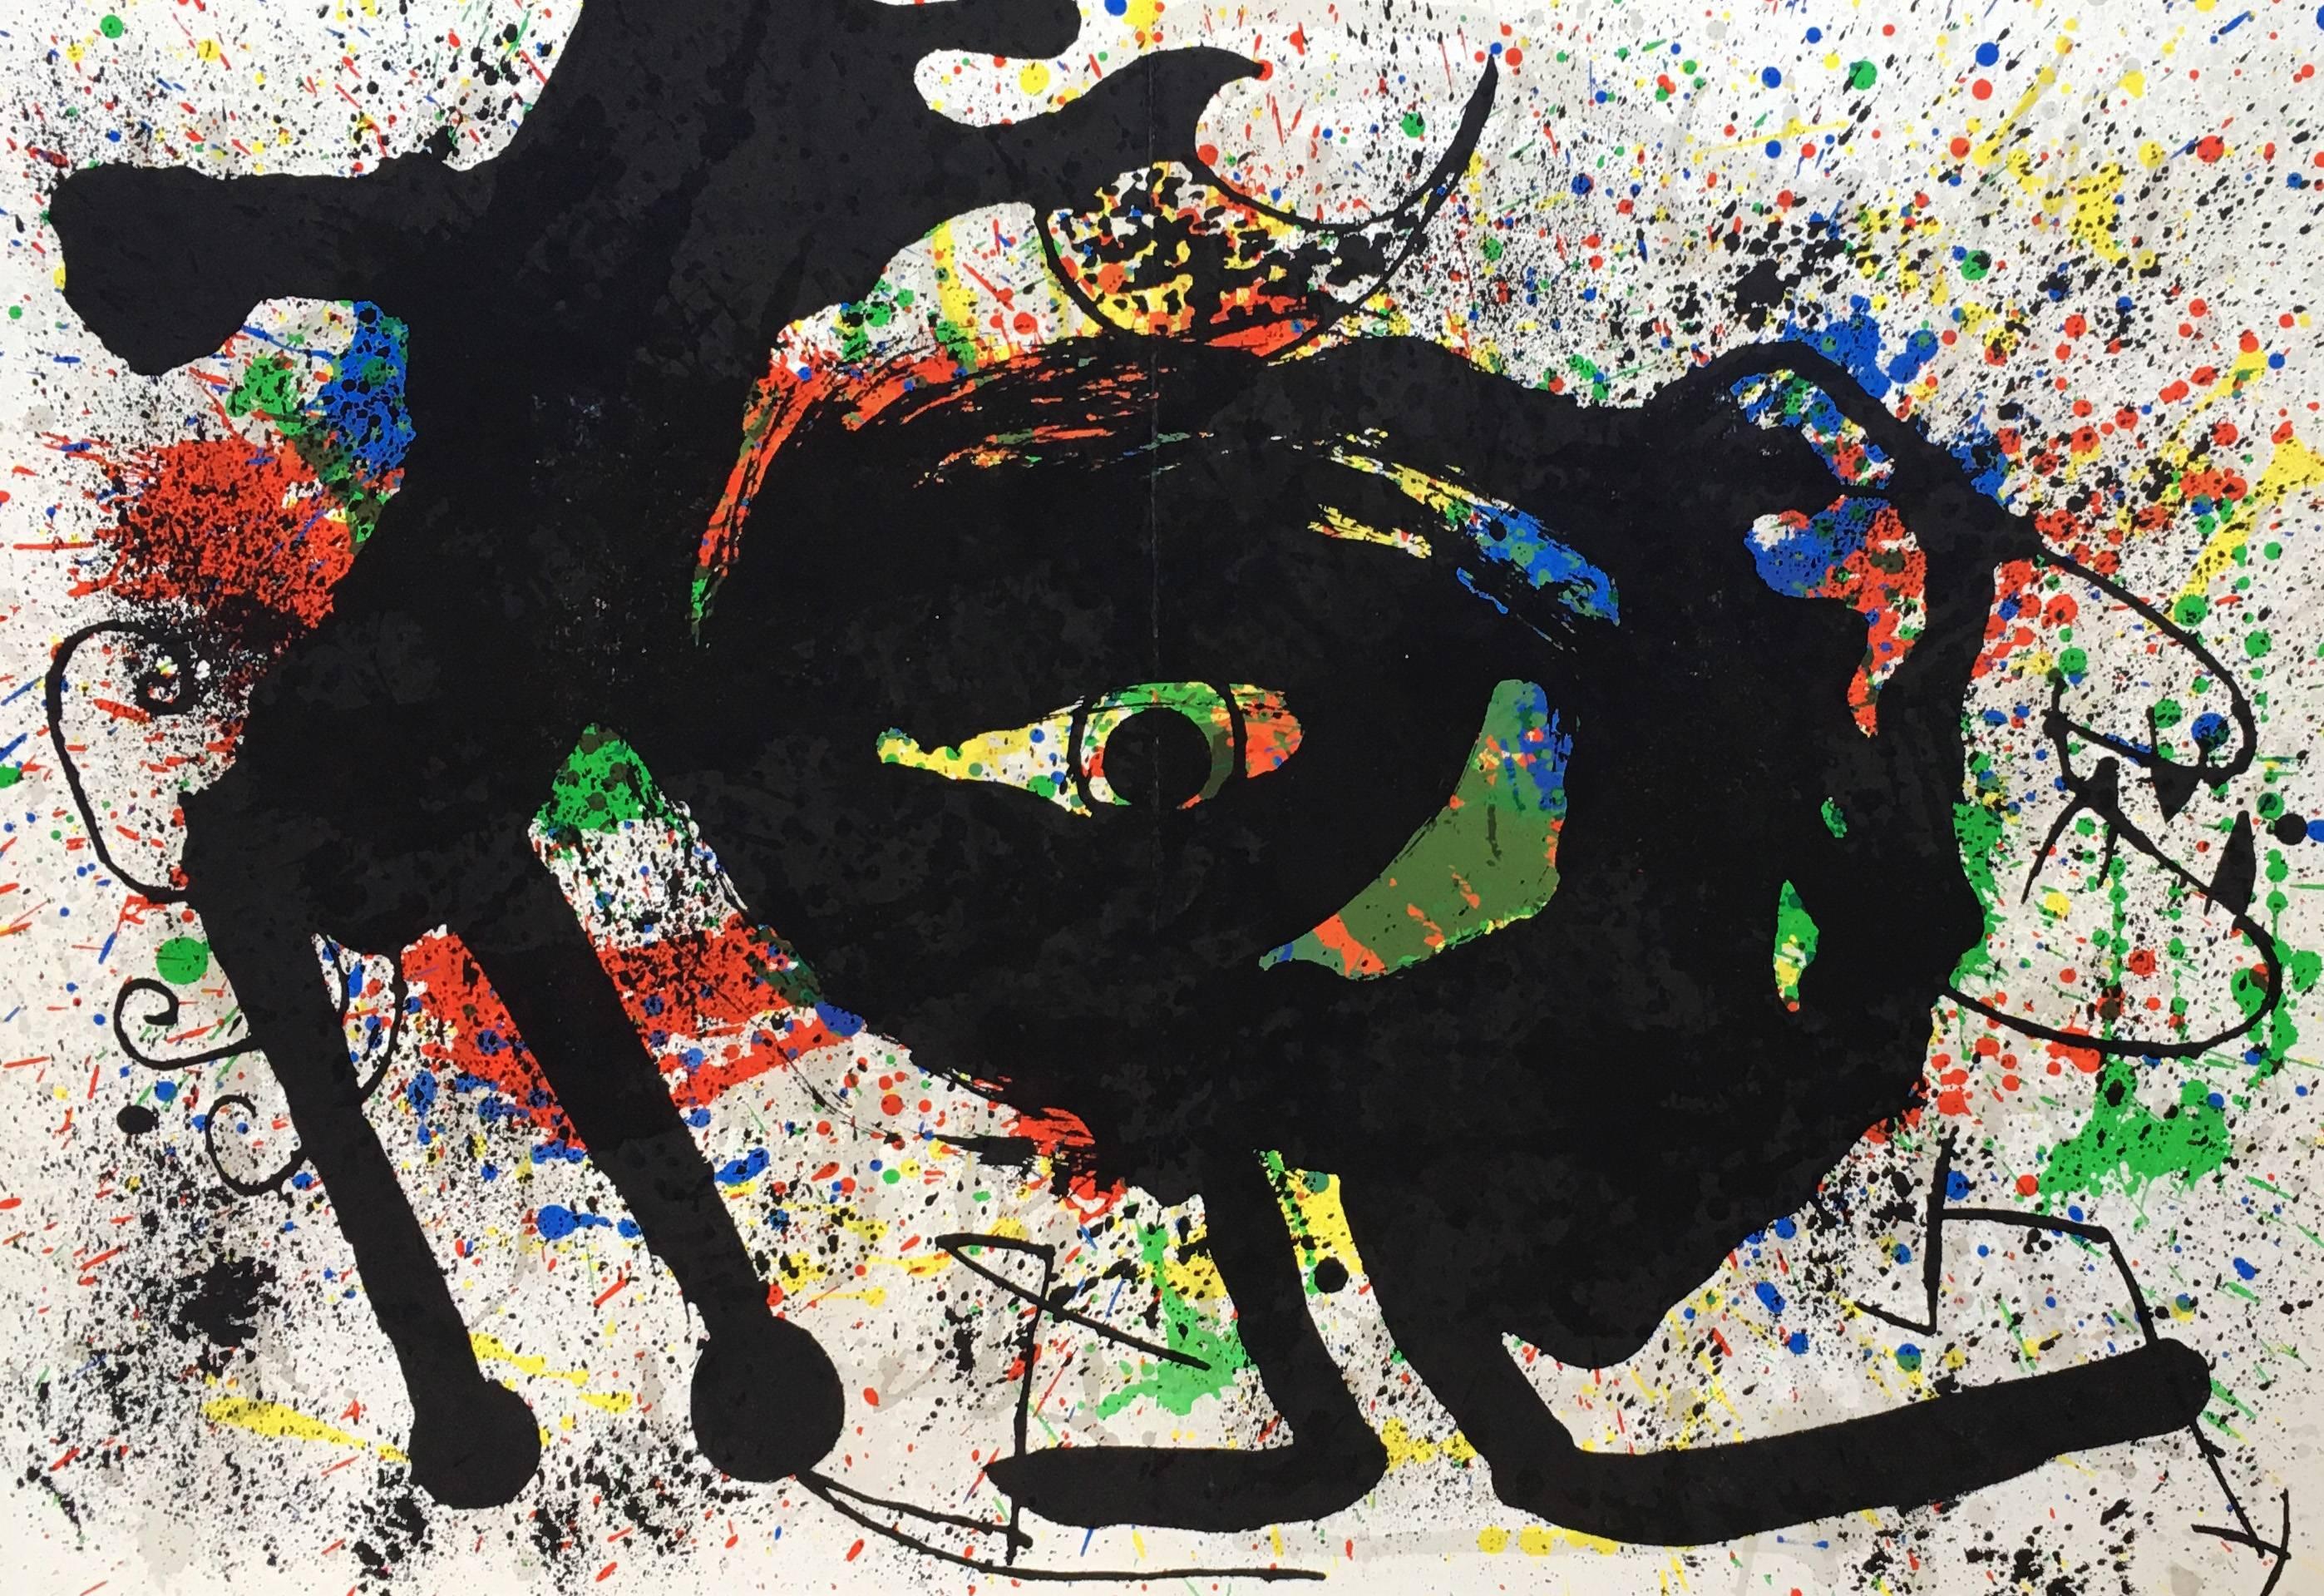 Joan Miró Lithographie 1973 de Derriere Le Miroir :

Lithographie hors-texte en couleurs, circa 1973.
15x22 pouces.
Très bon état général ; contient une légère ligne de pliage au centre comme à l'origine.
Non signé d'une édition d'inconnus.